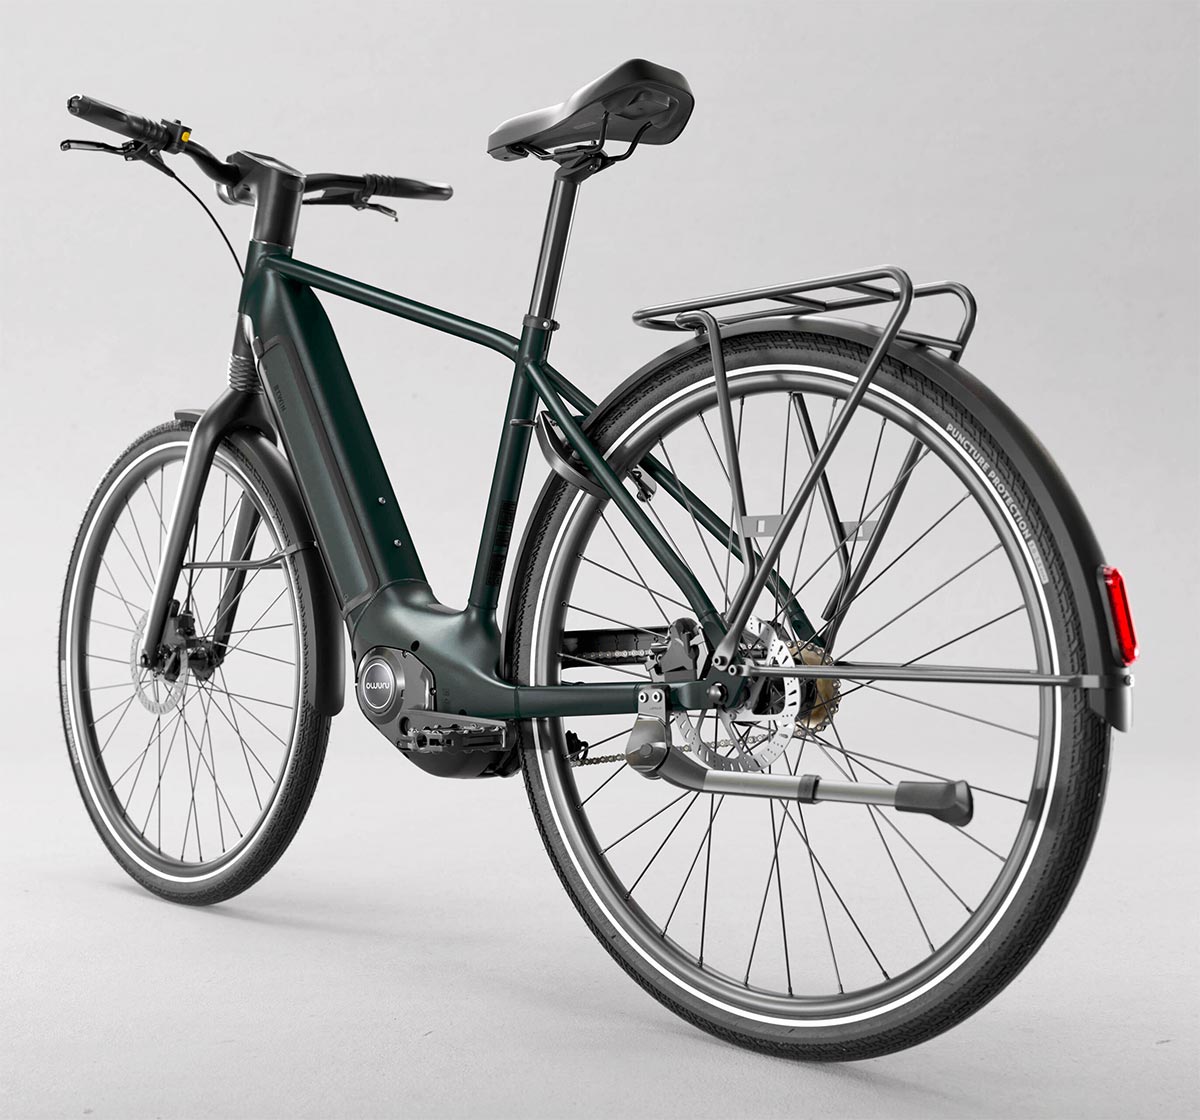 Decathlon presenta la B'Twin LD 920 E, una bicicleta eléctrica urbana con cambio automático y autonomía de hasta 150 km